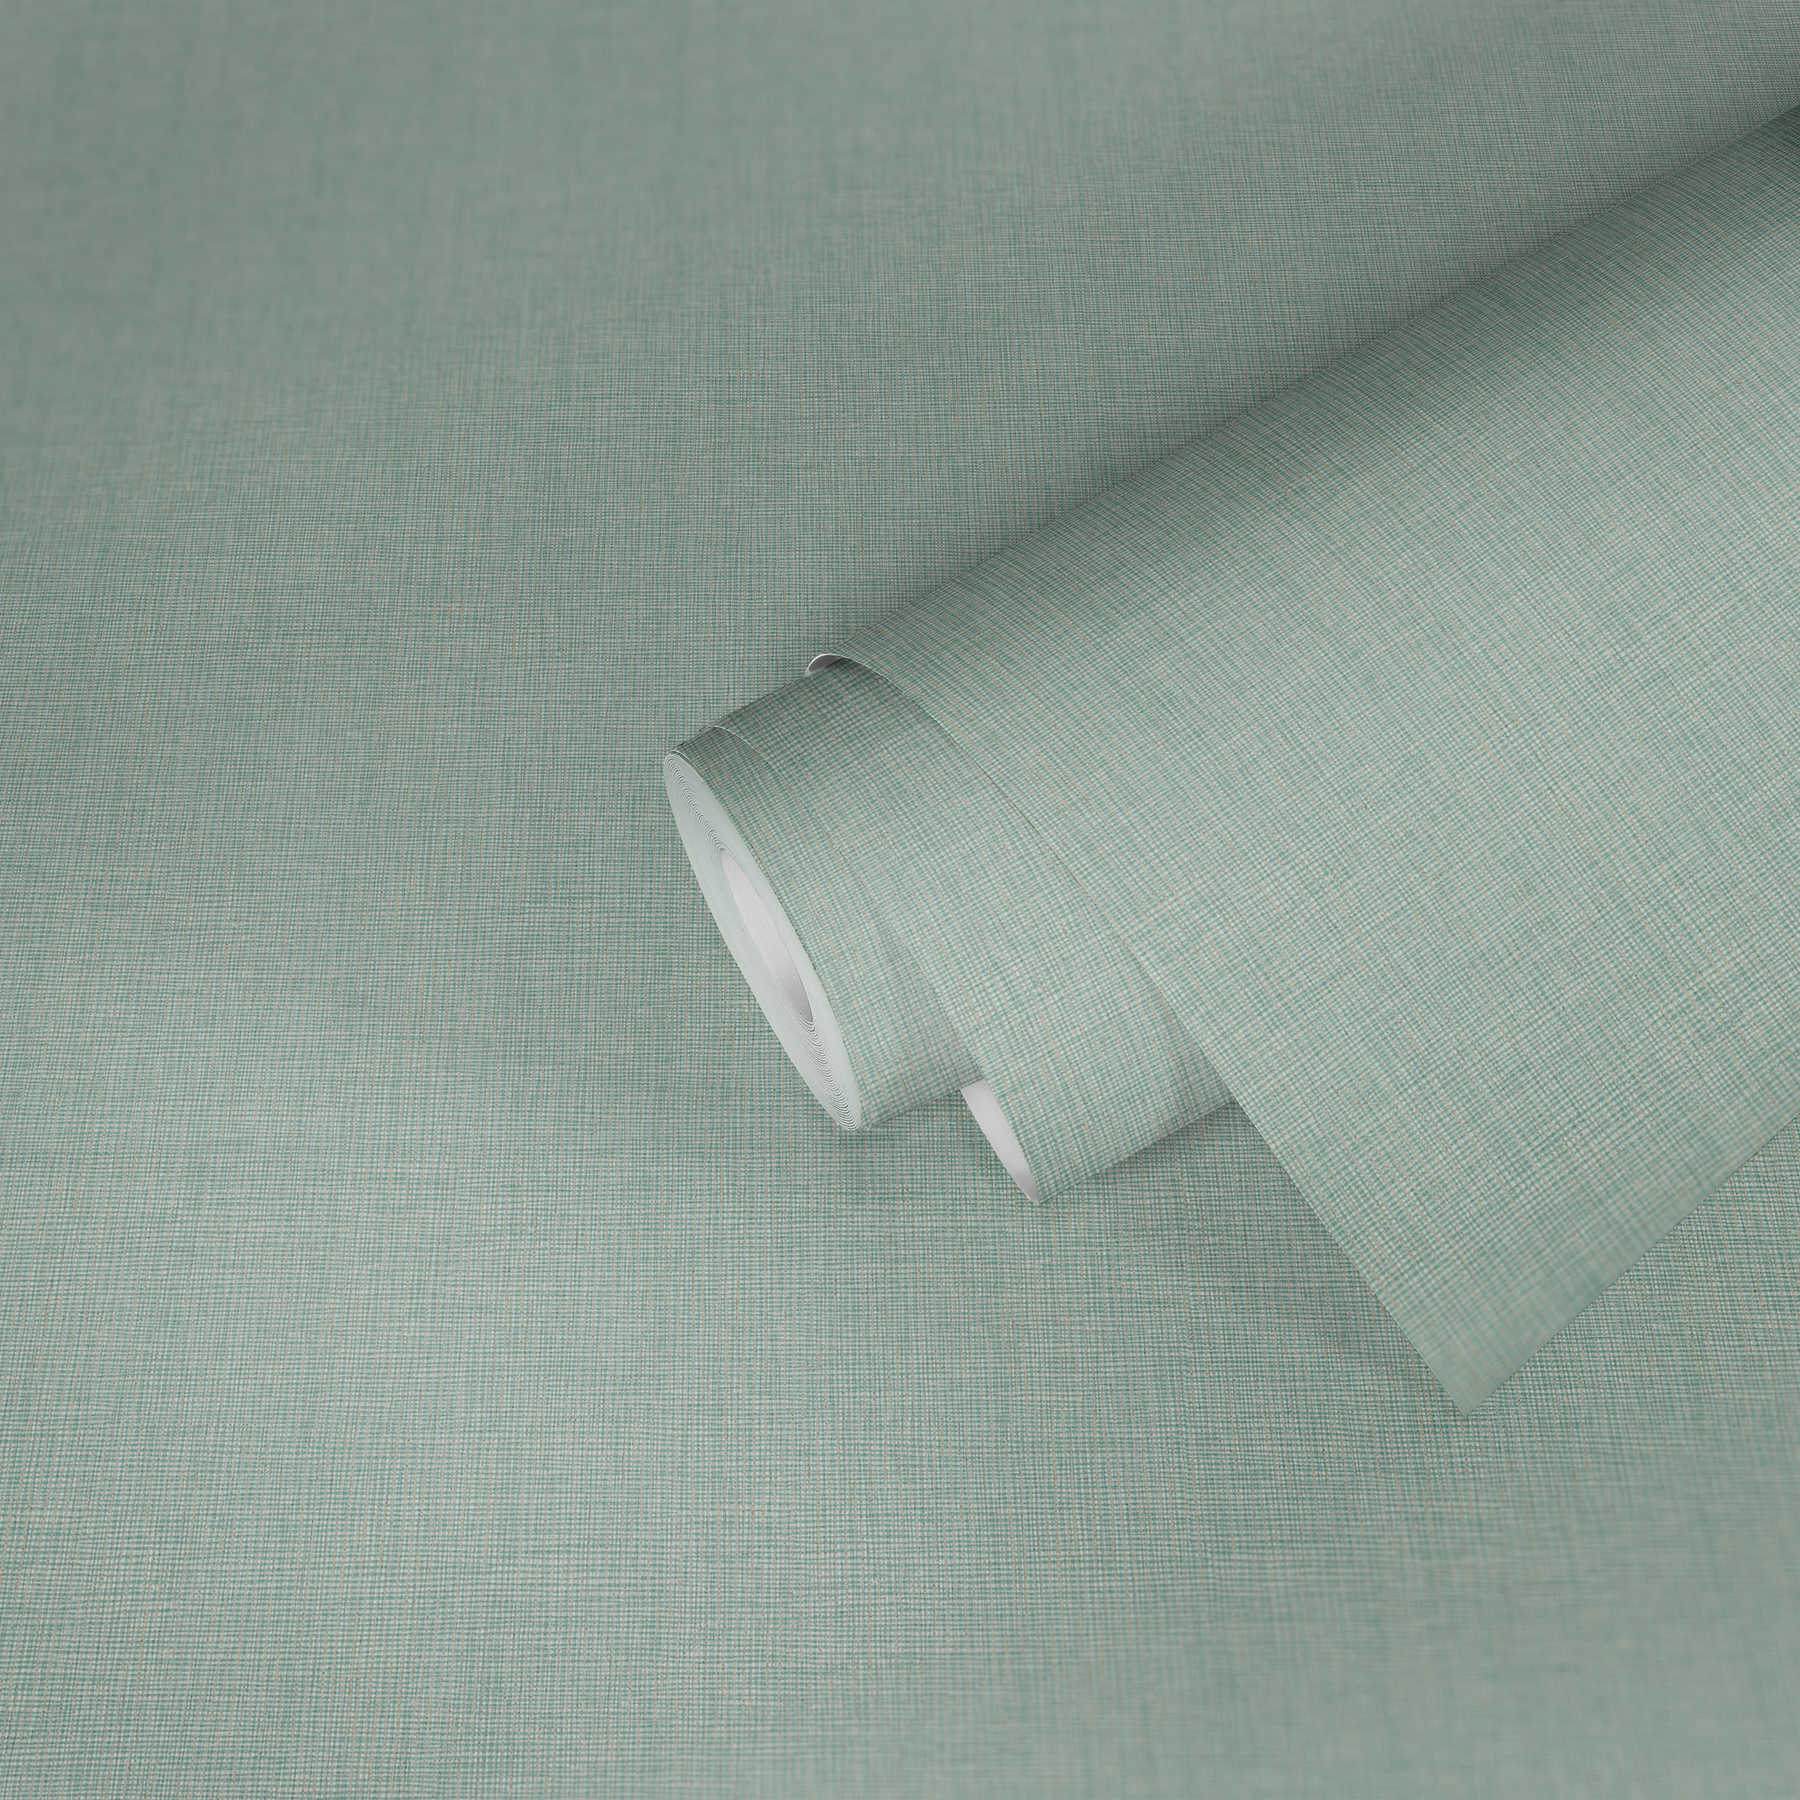             Papier peint vert clair aspect textile avec détails dorés - bleu, gris, argenté
        